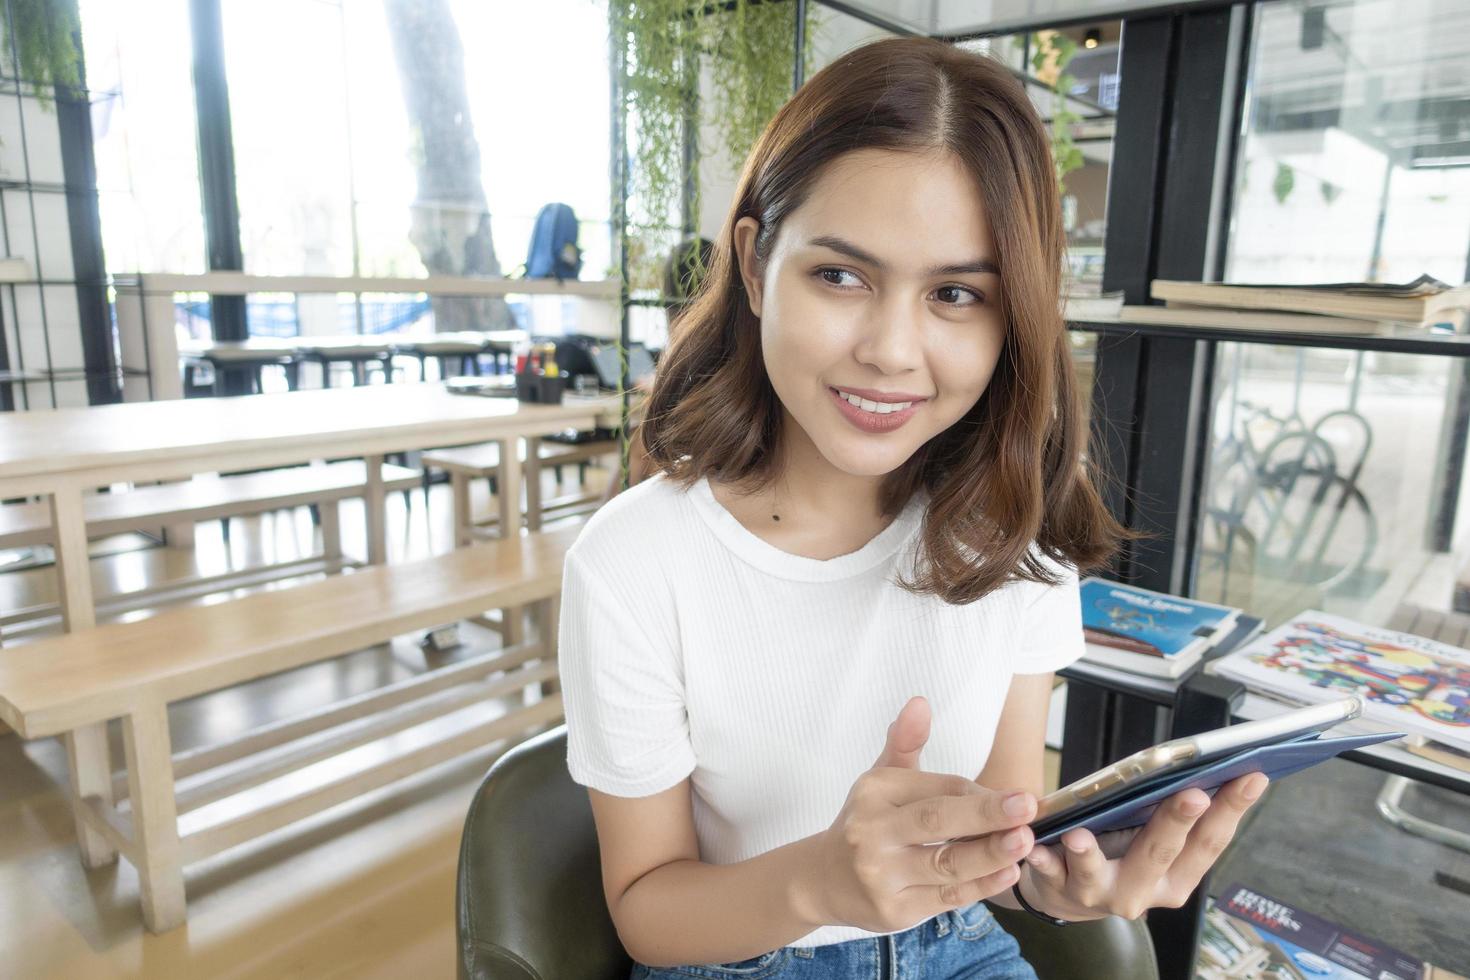 belle fille d'affaires travaillant avec tablette, smartphone et buvant du café dans un café photo